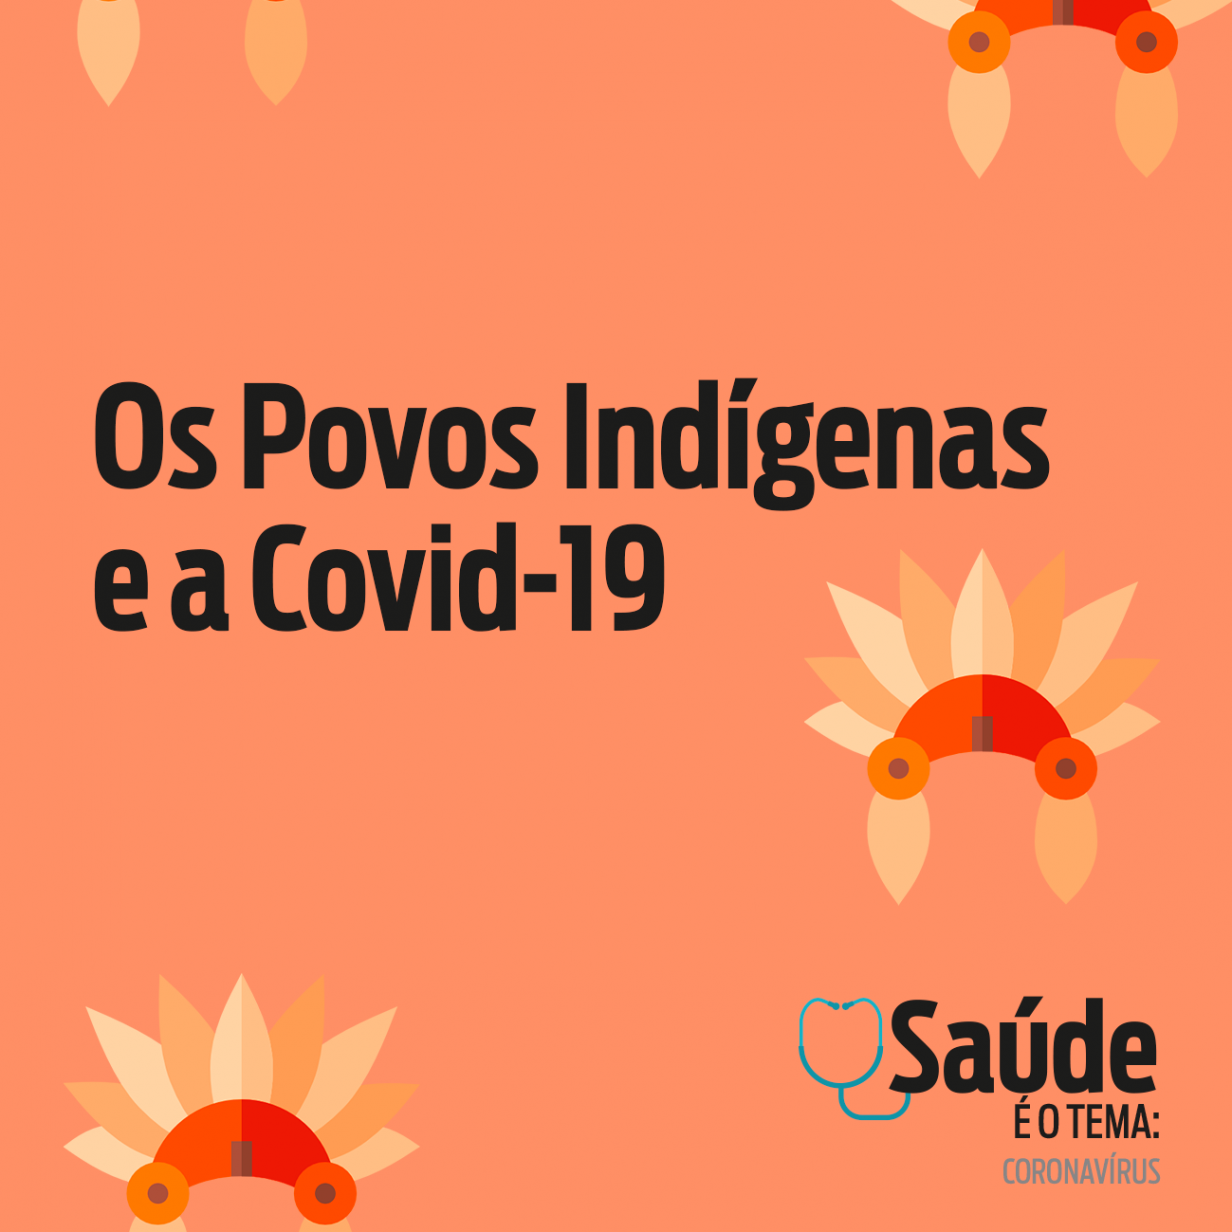 Os povos indígenas e a Covid-19